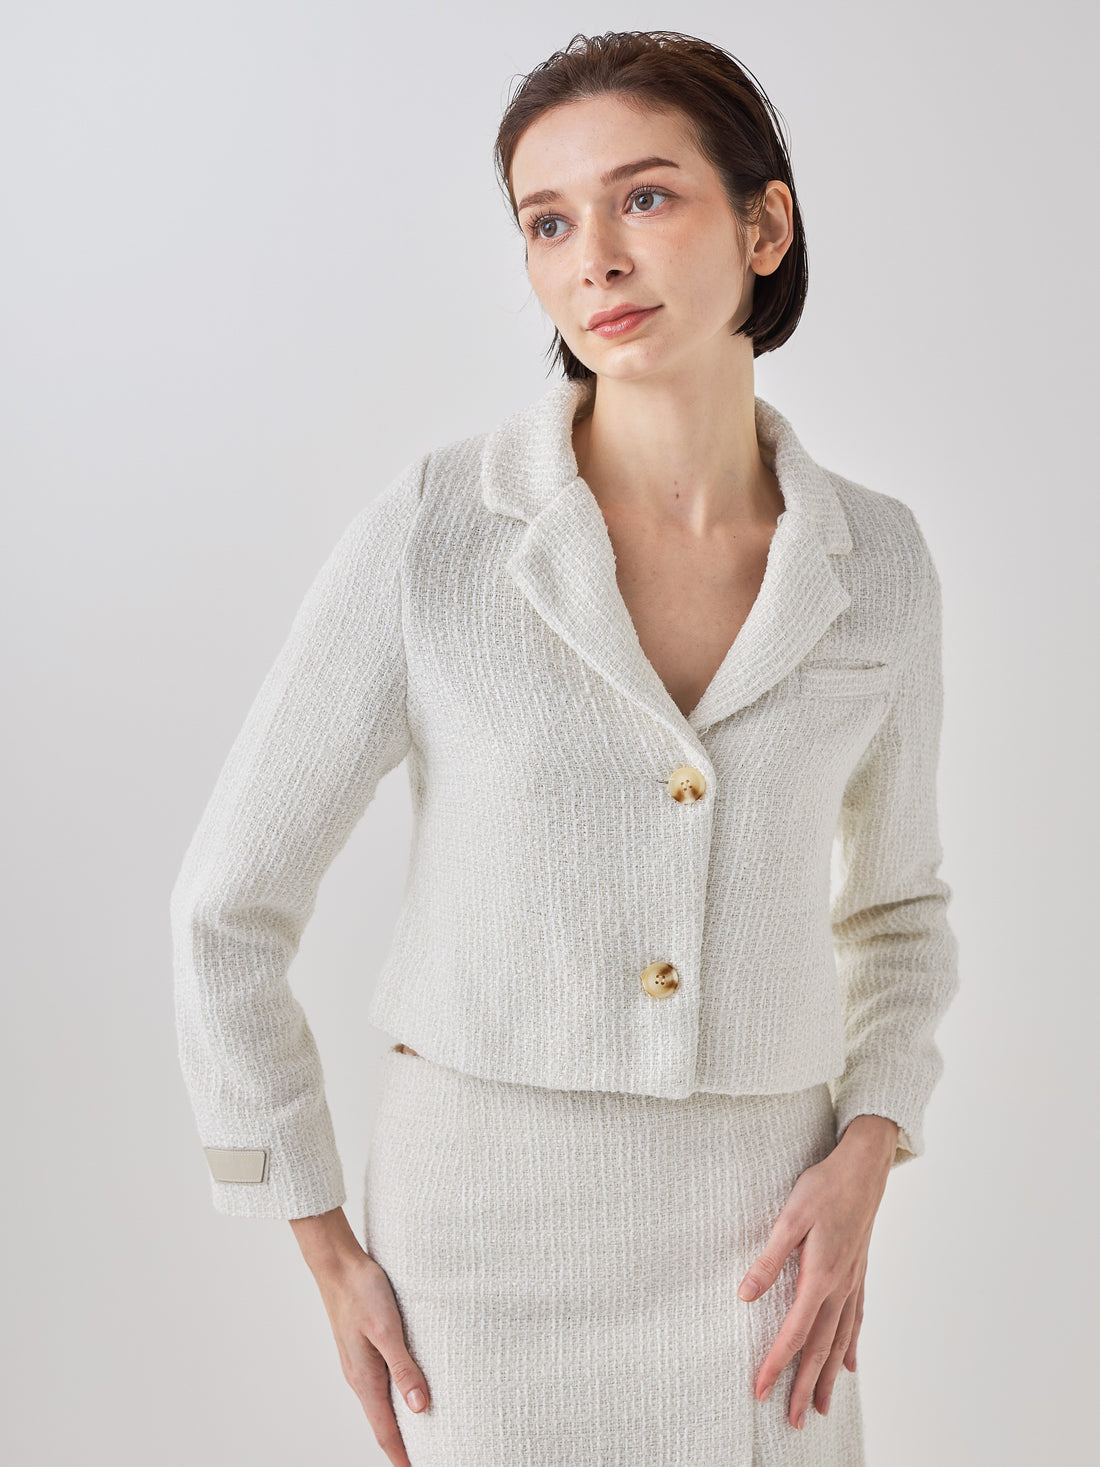 tweed crop blazer jacket / white